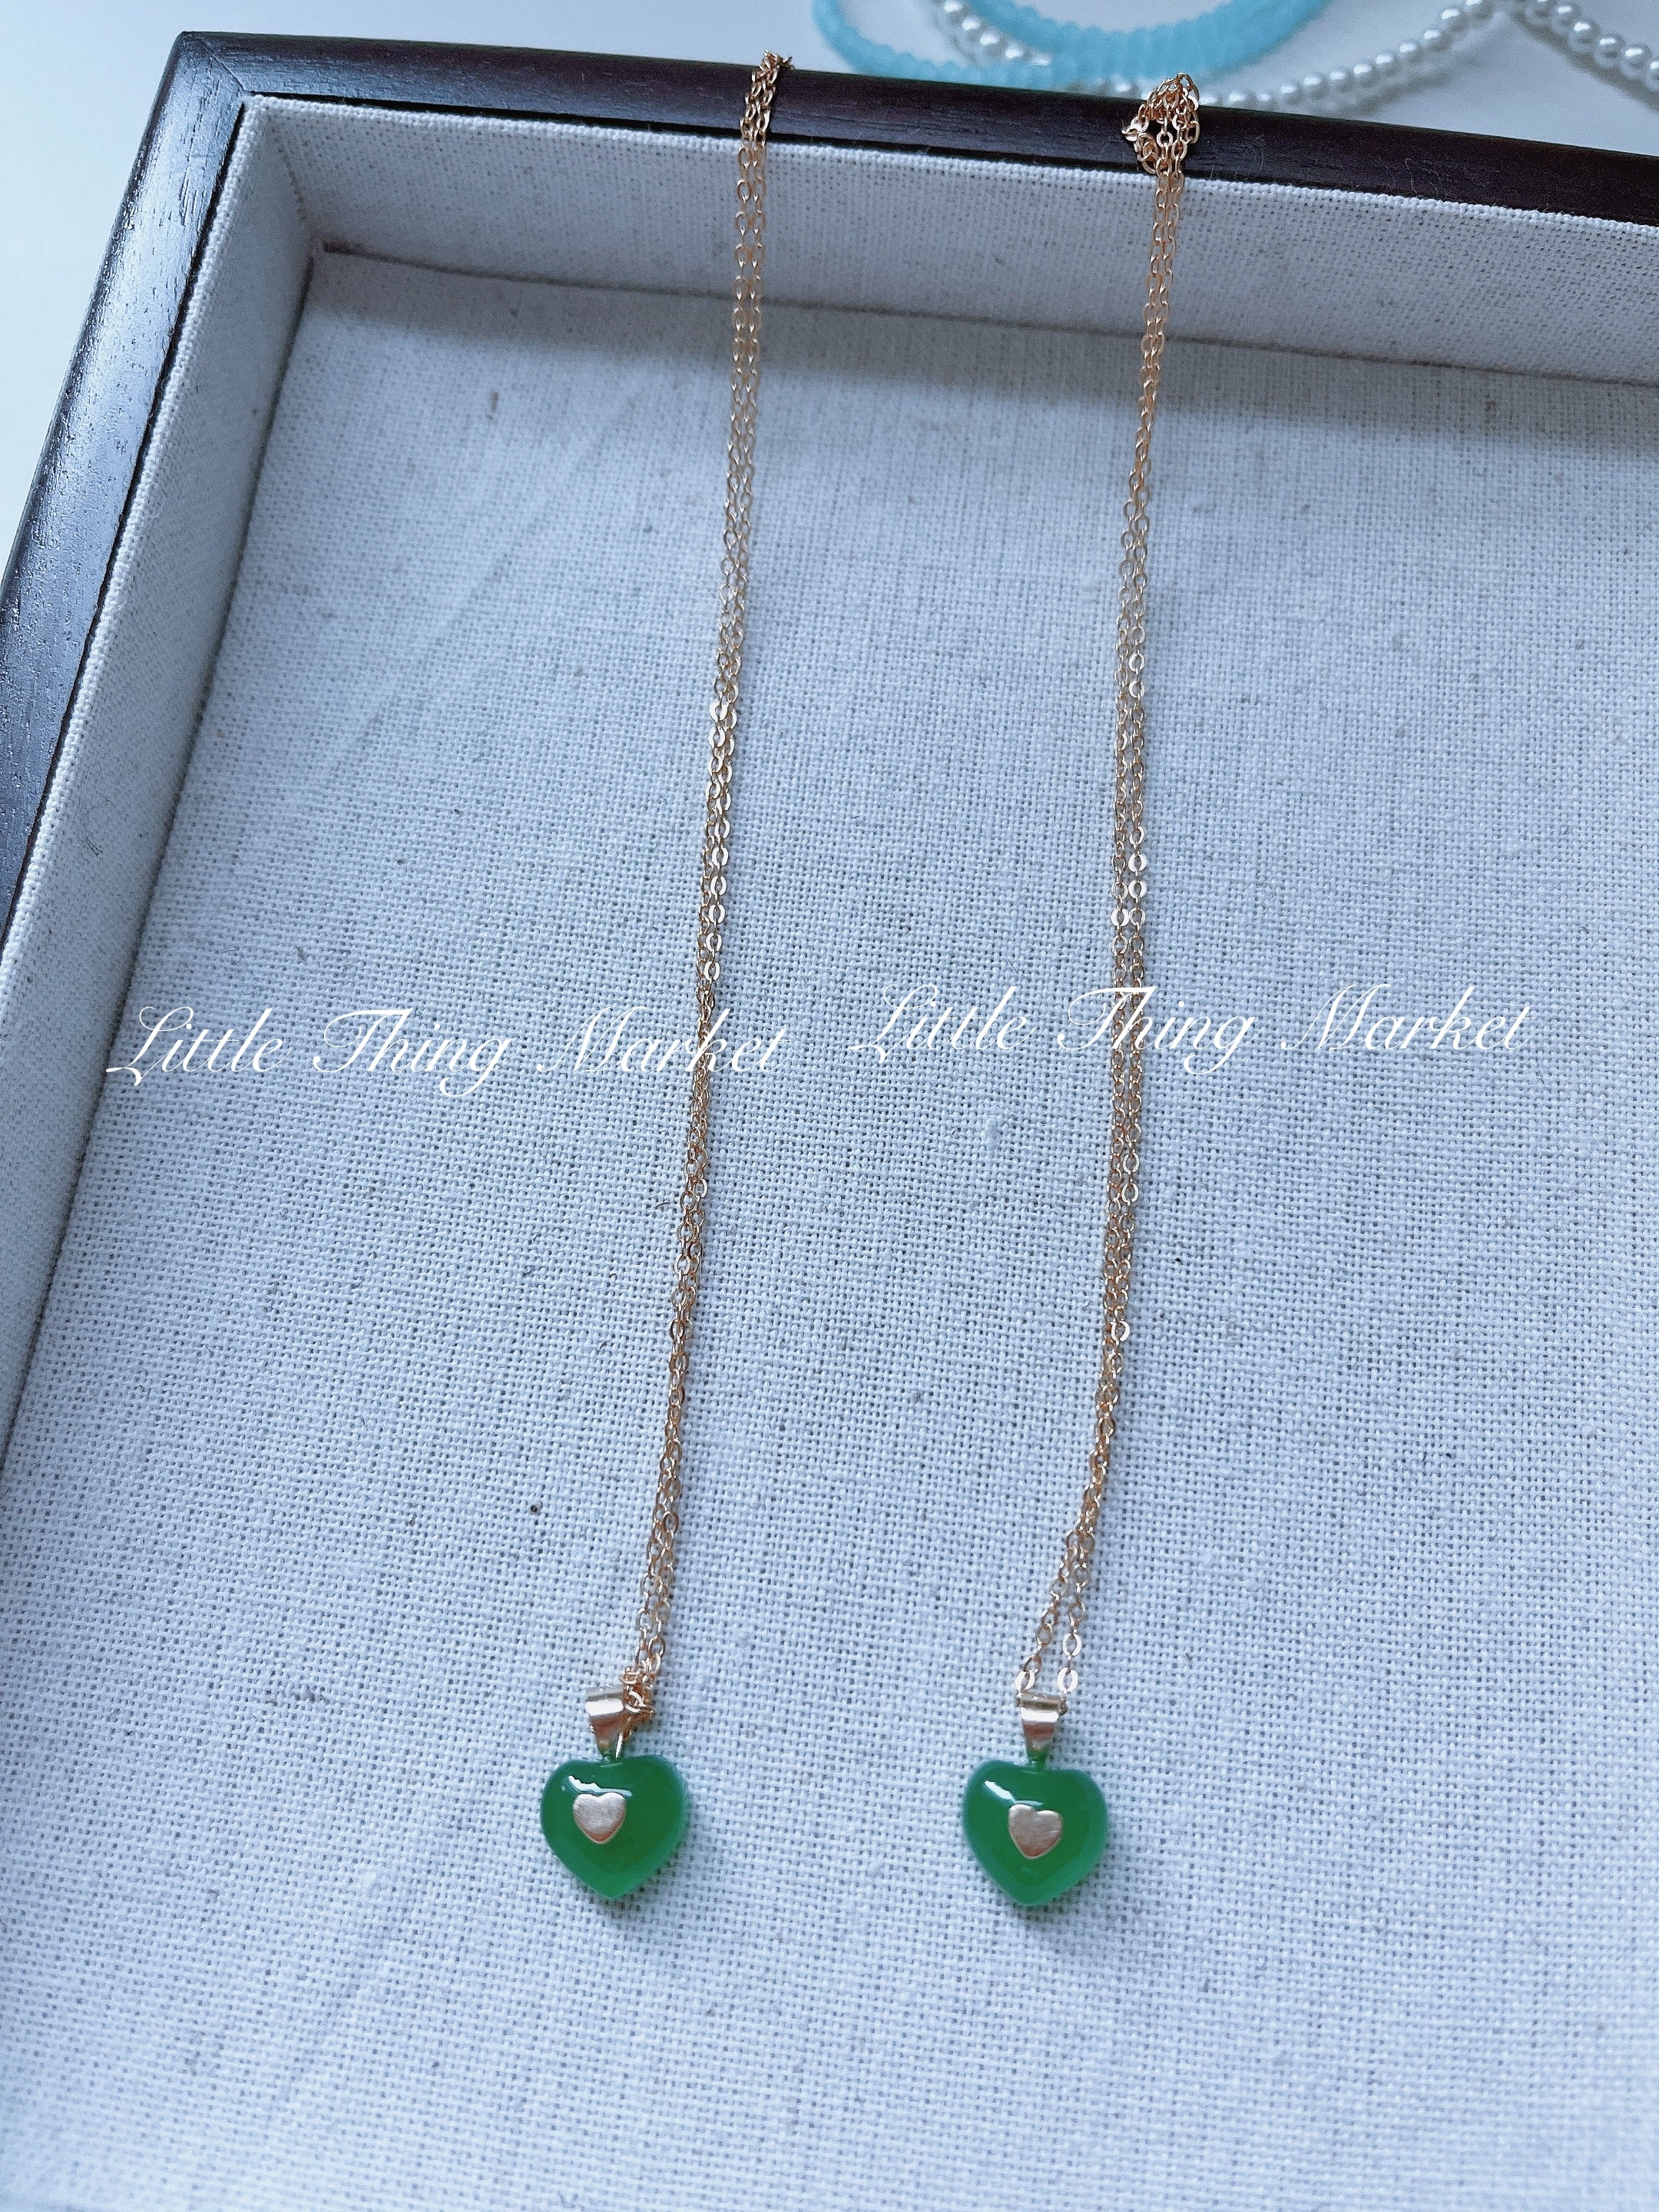 Little Green Heart Necklace